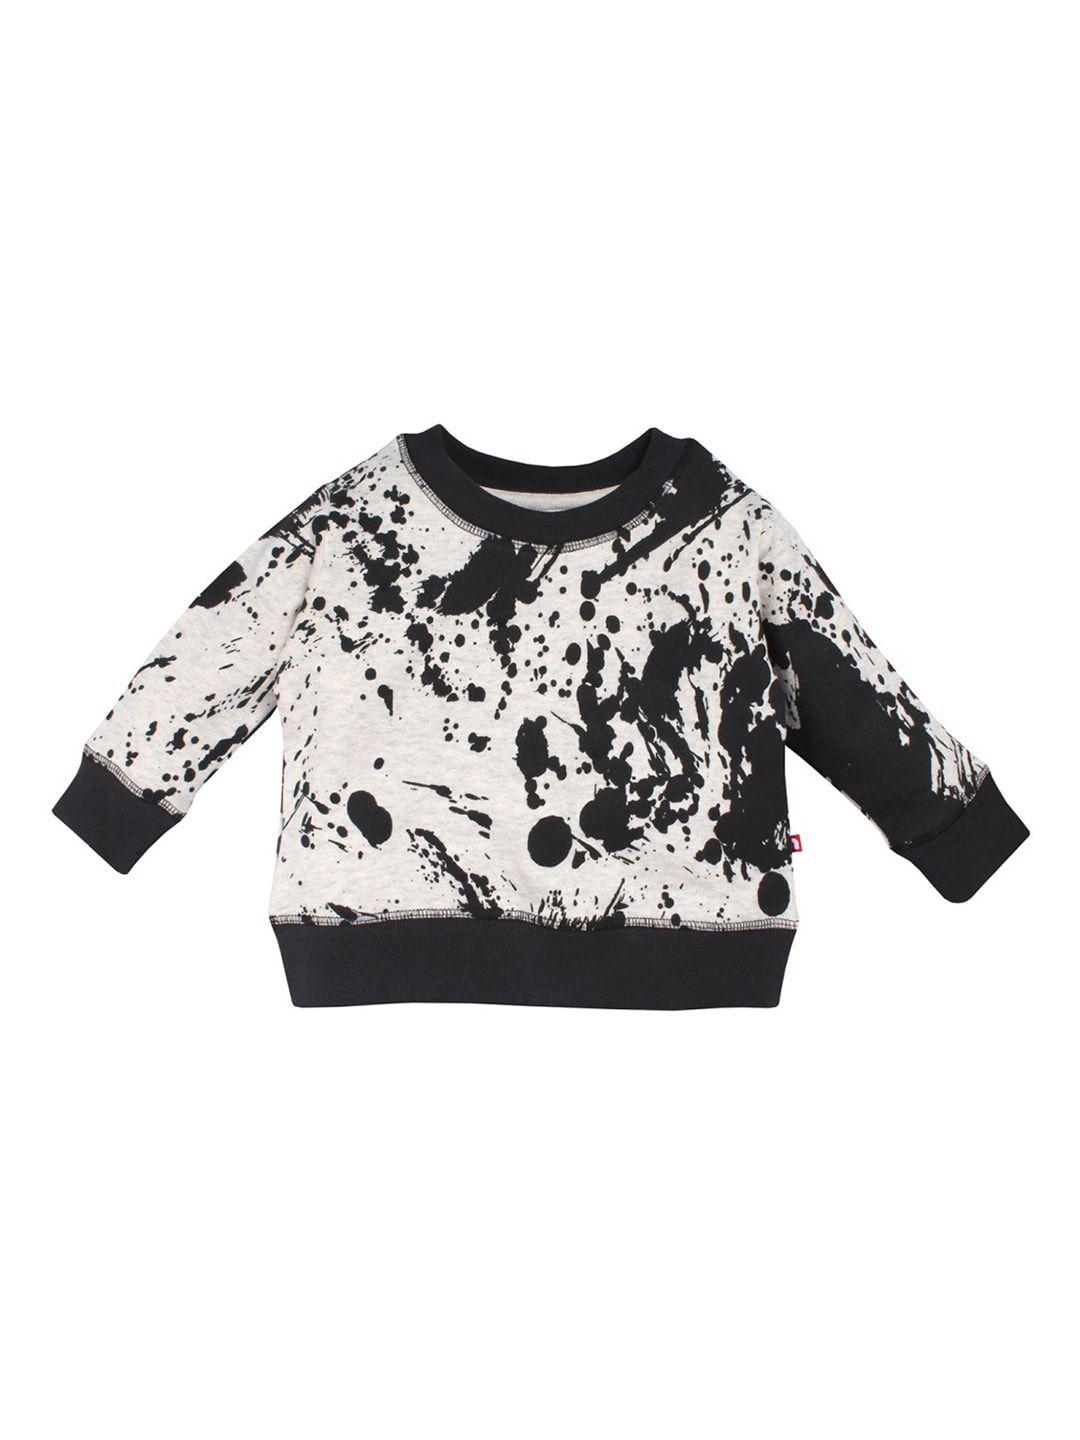 nino bambino unisex organic cotton cream-coloured & black printed sustainable sweatshirt